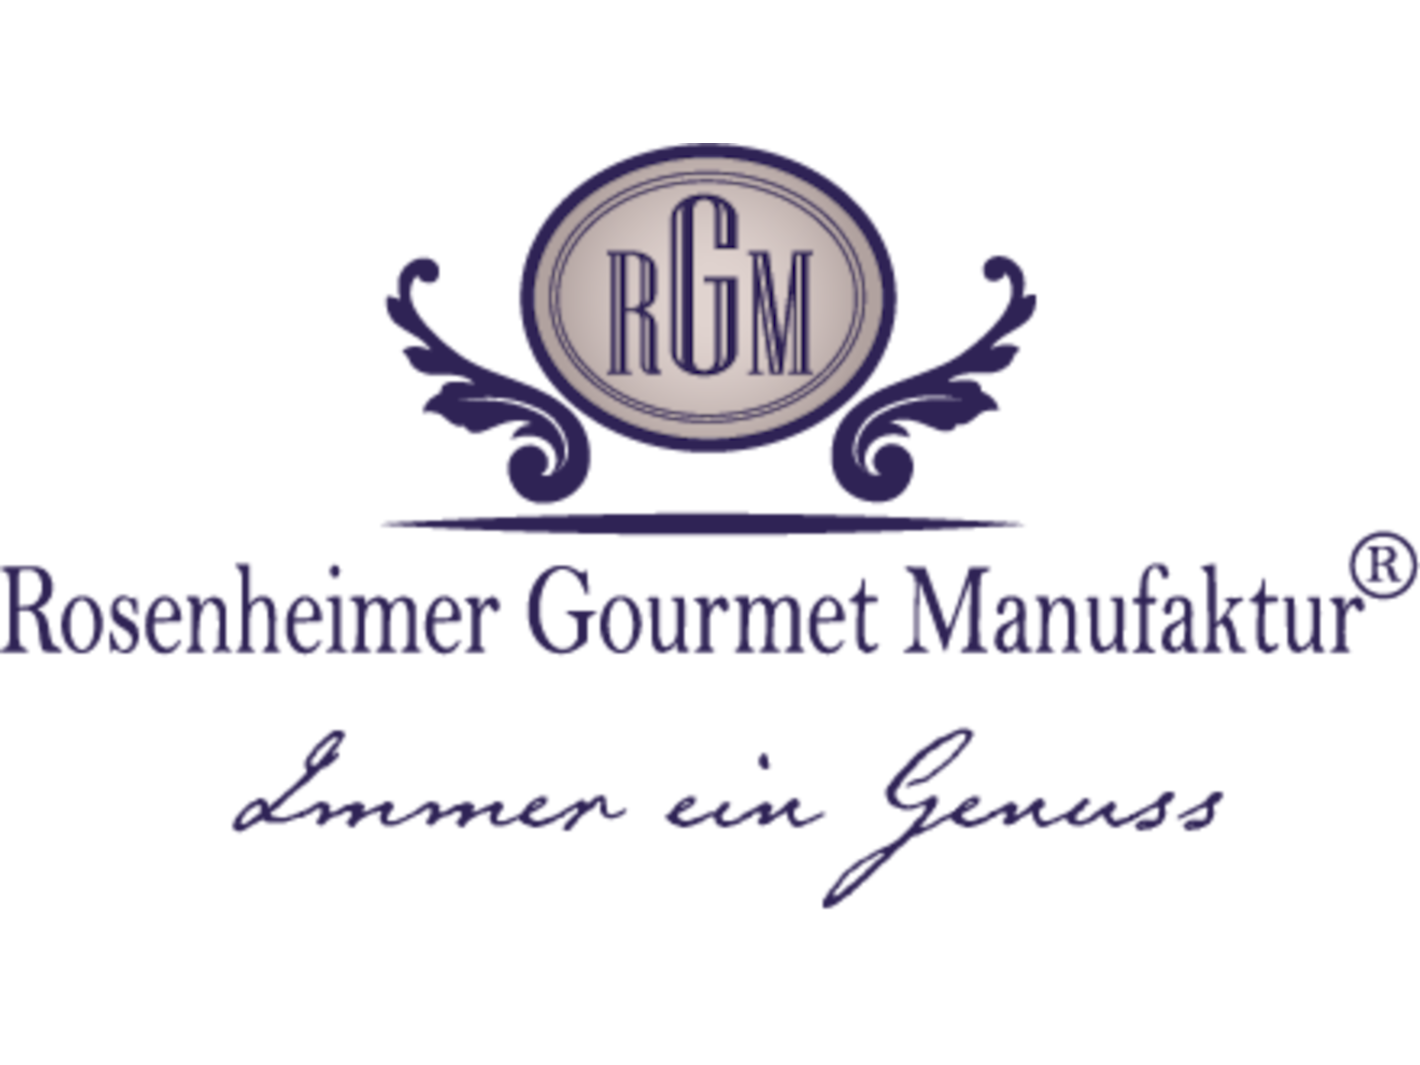 Rosenheimer Gourmet Manufaktur Die Marke